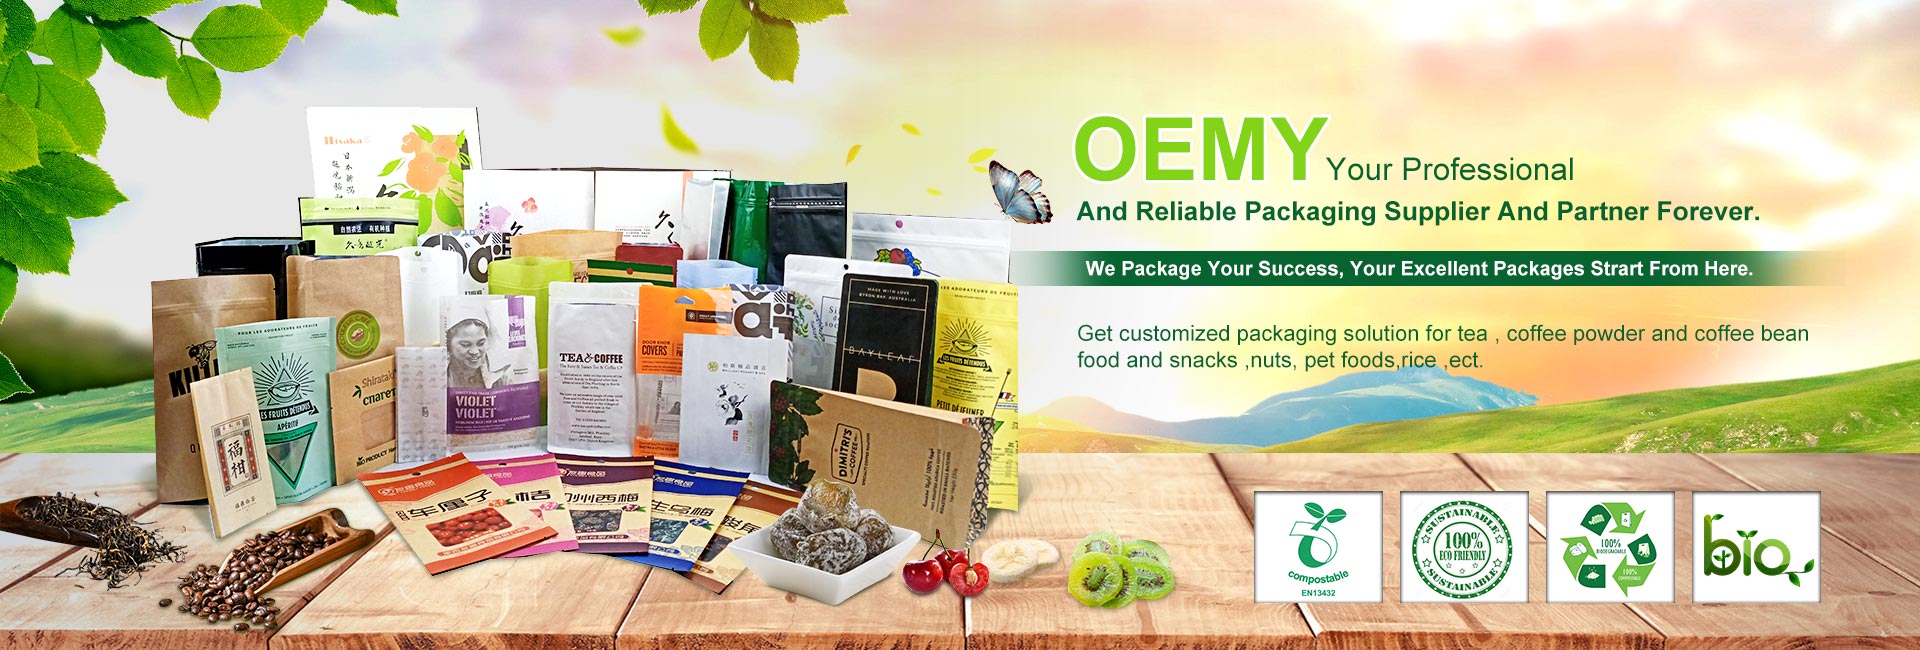 OEMY は、プロフェッショナルで信頼できる包装サプライヤーであり、永遠のパートナーです。